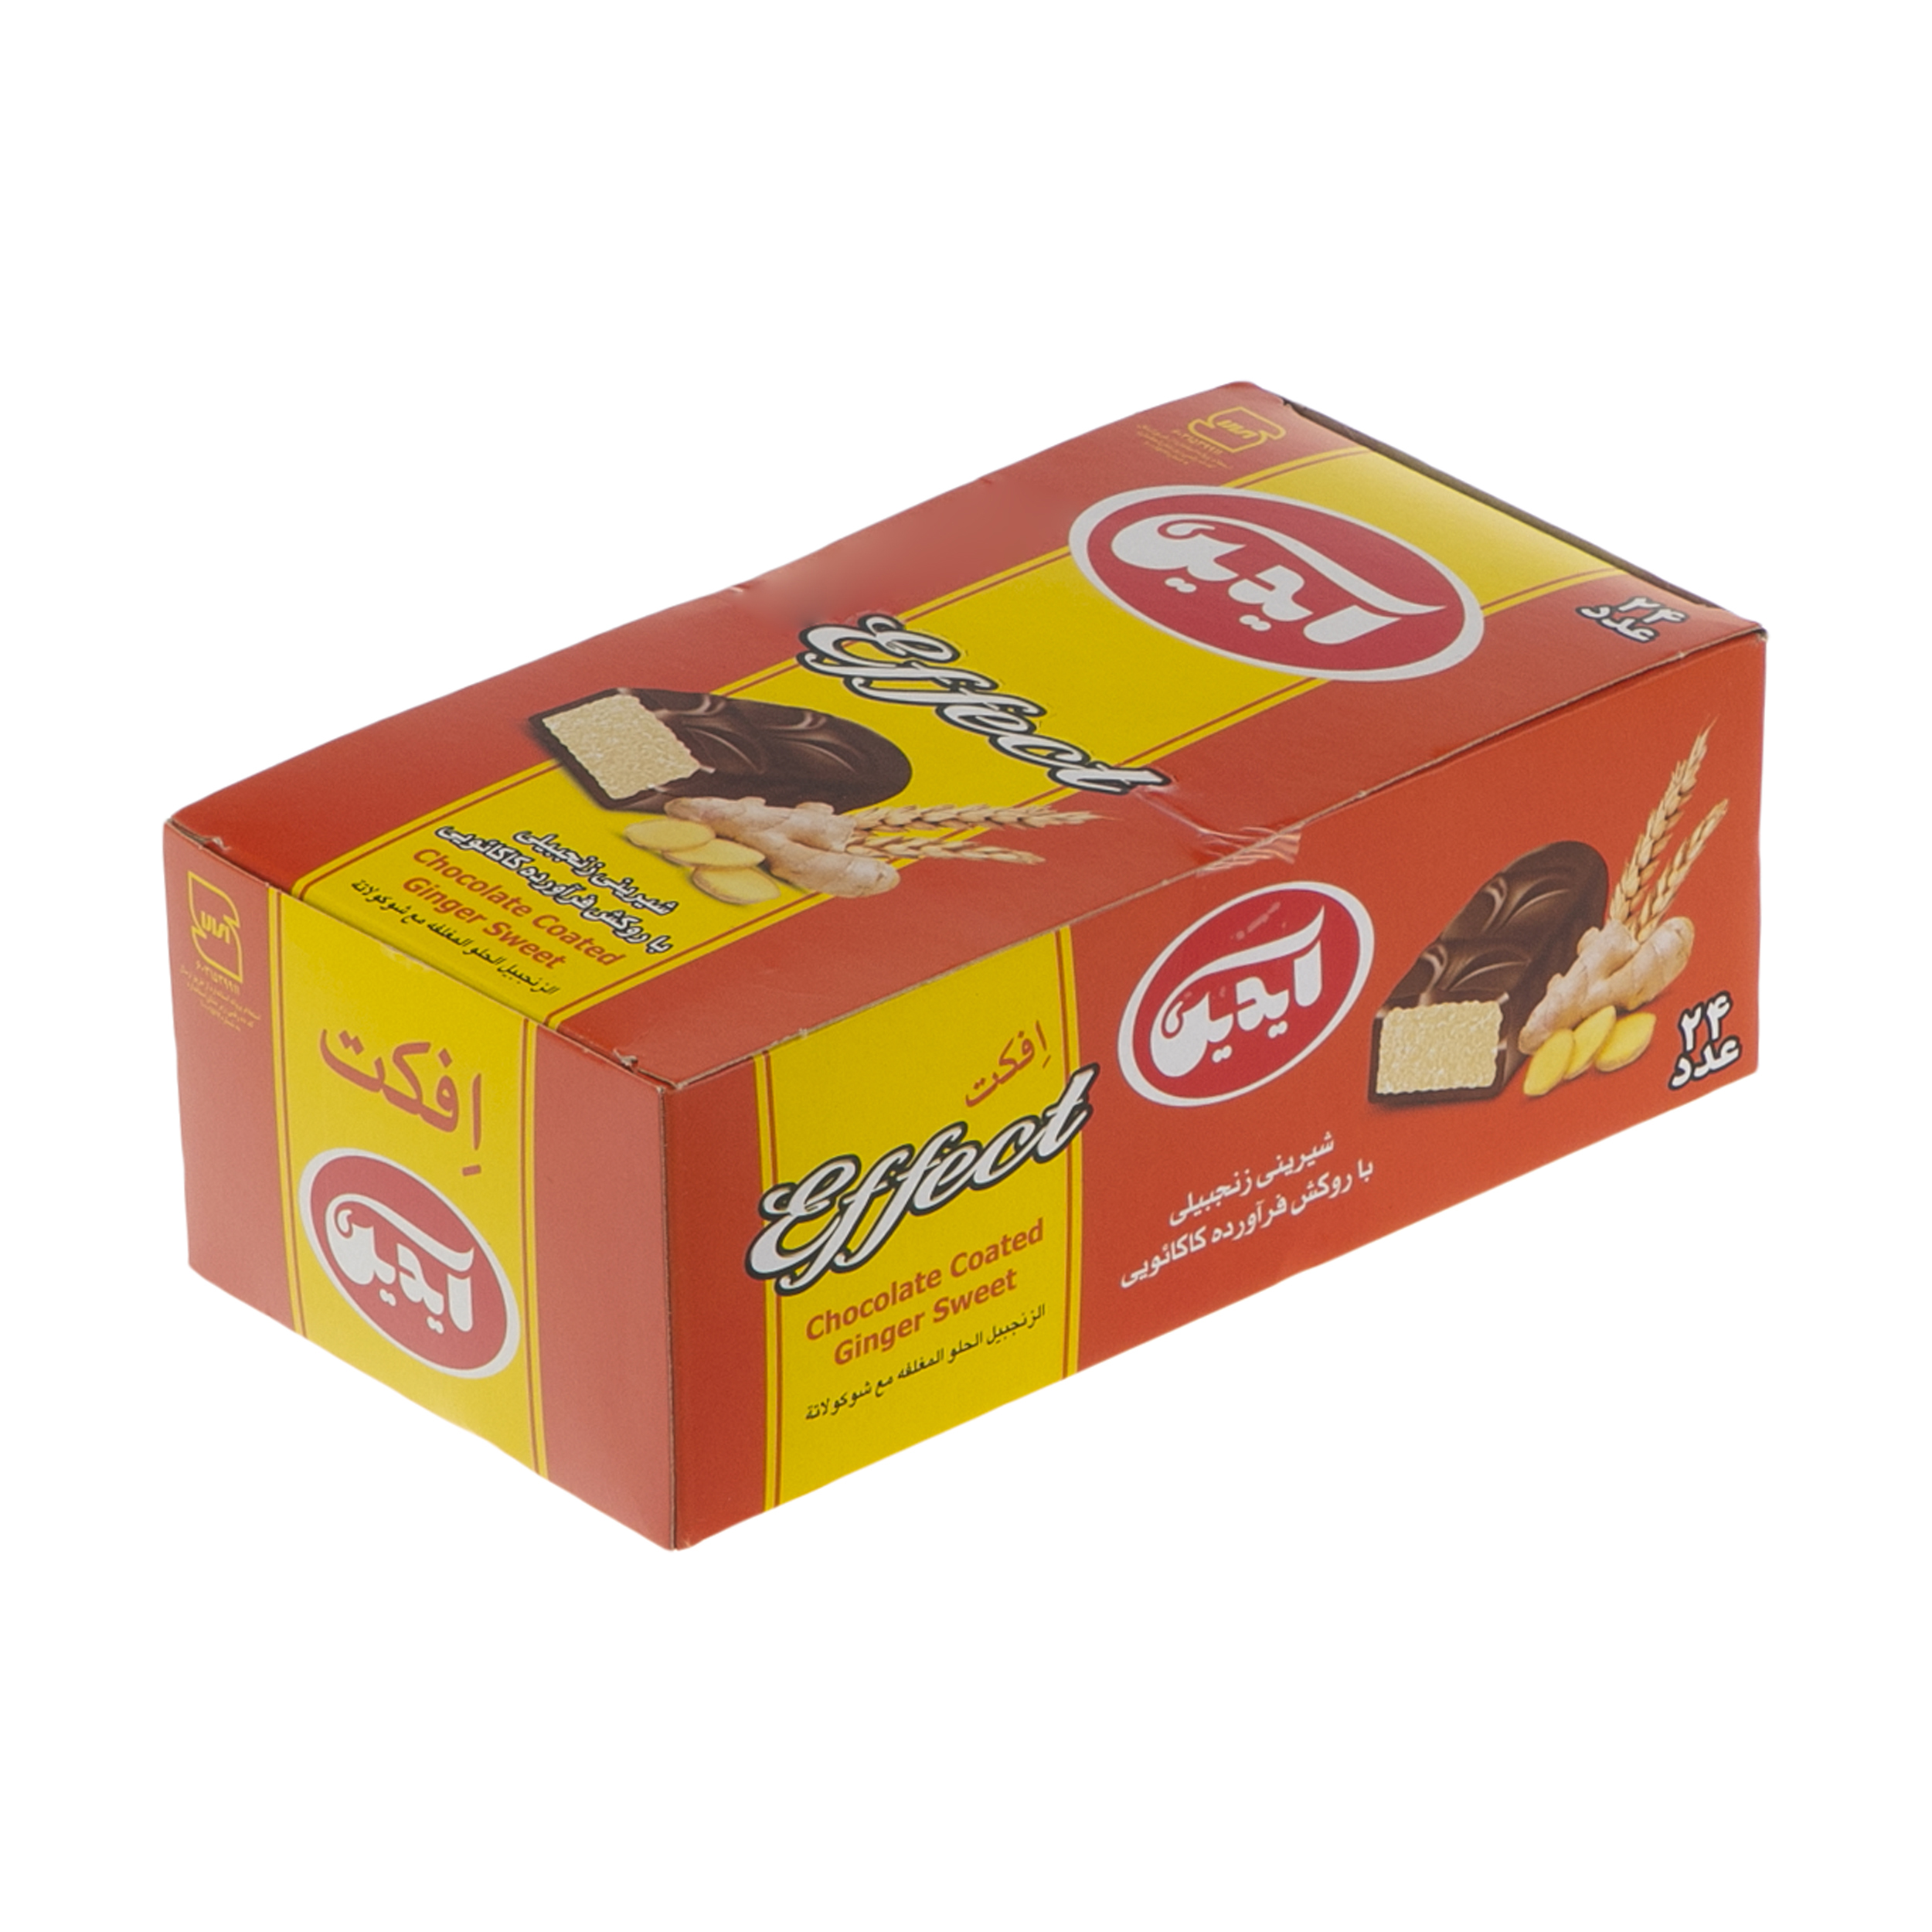 شیرینی زنجبیلی با روکش کاکائویی آیدین - 20 گرم بسته 24 عددی